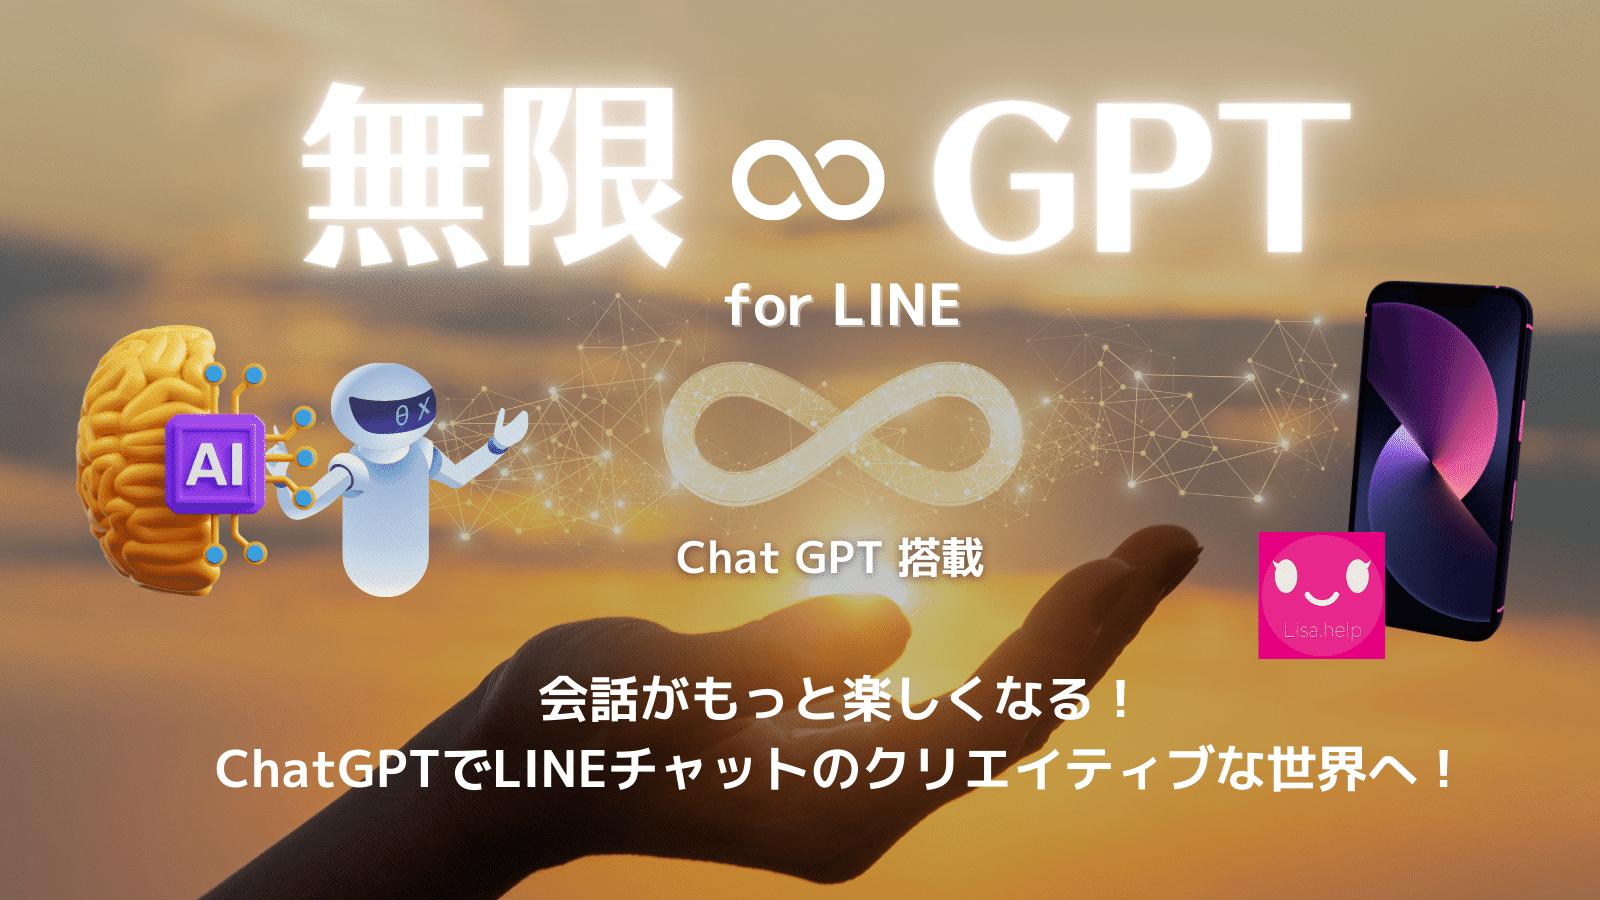 無限GPT for LINE Chat GPTが無制限に使える。